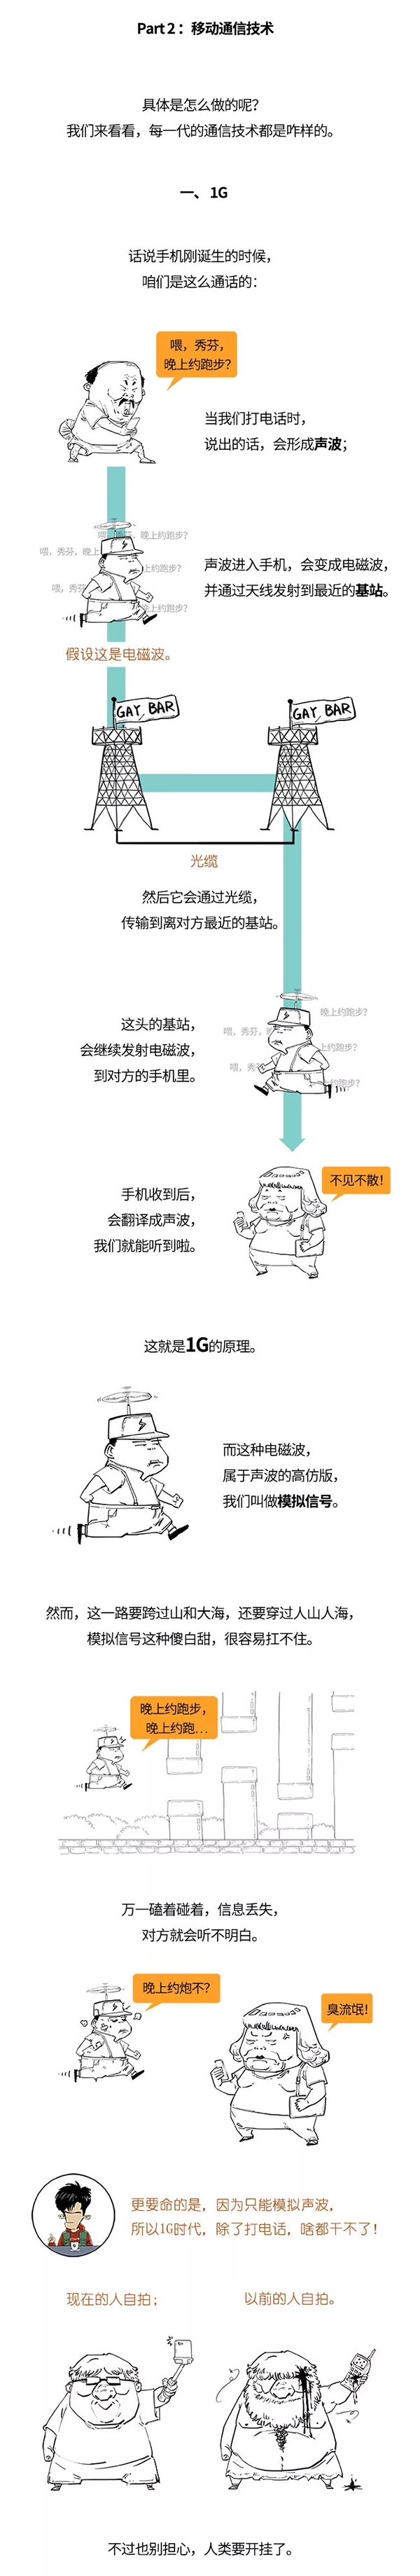 5G演进技术知识科普漫画